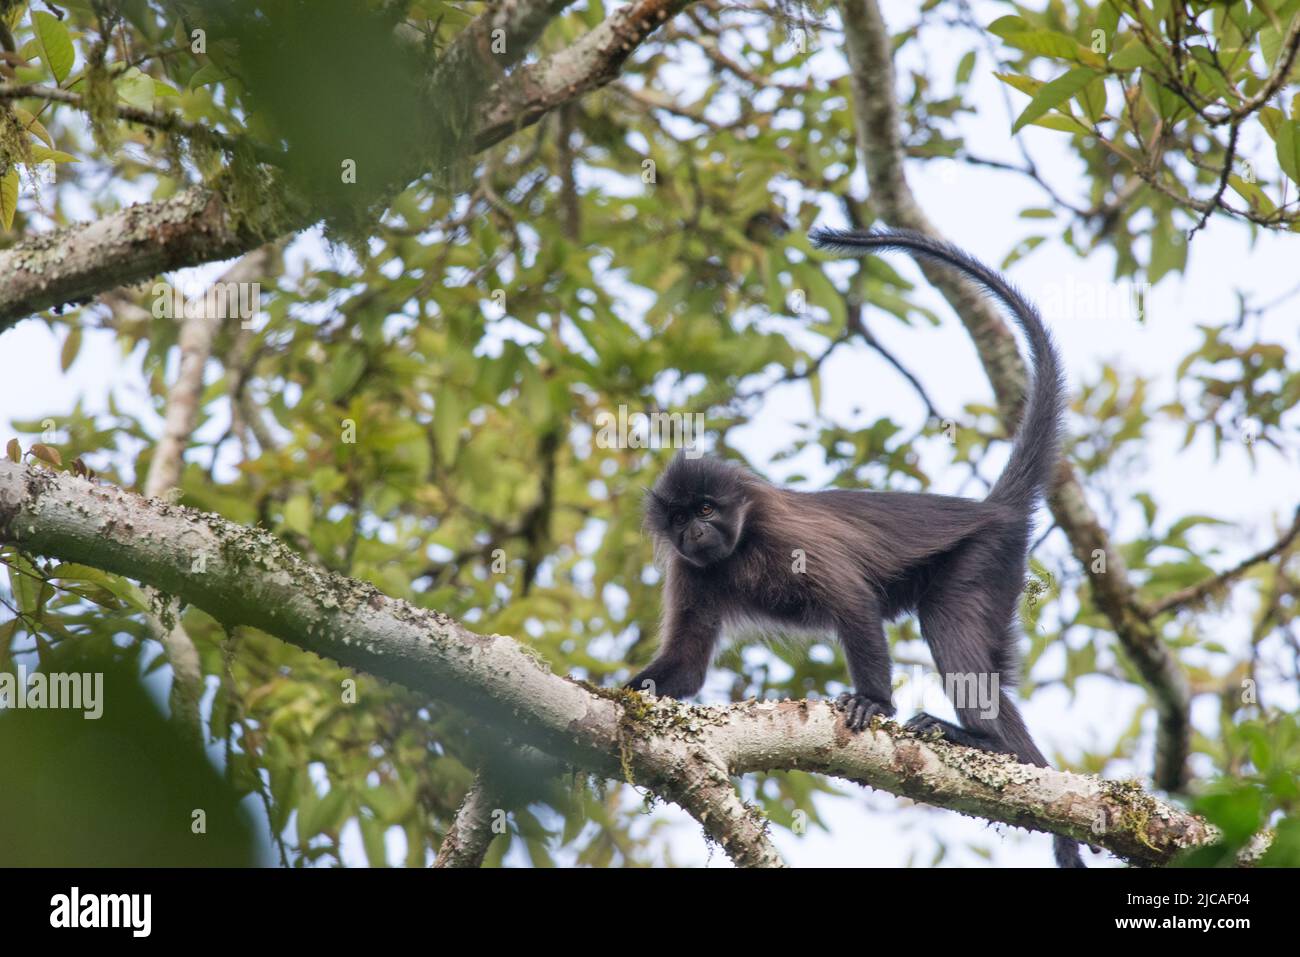 Grey-cheeked mangabey monkey walking through the forest canopy, Uganda. Stock Photo